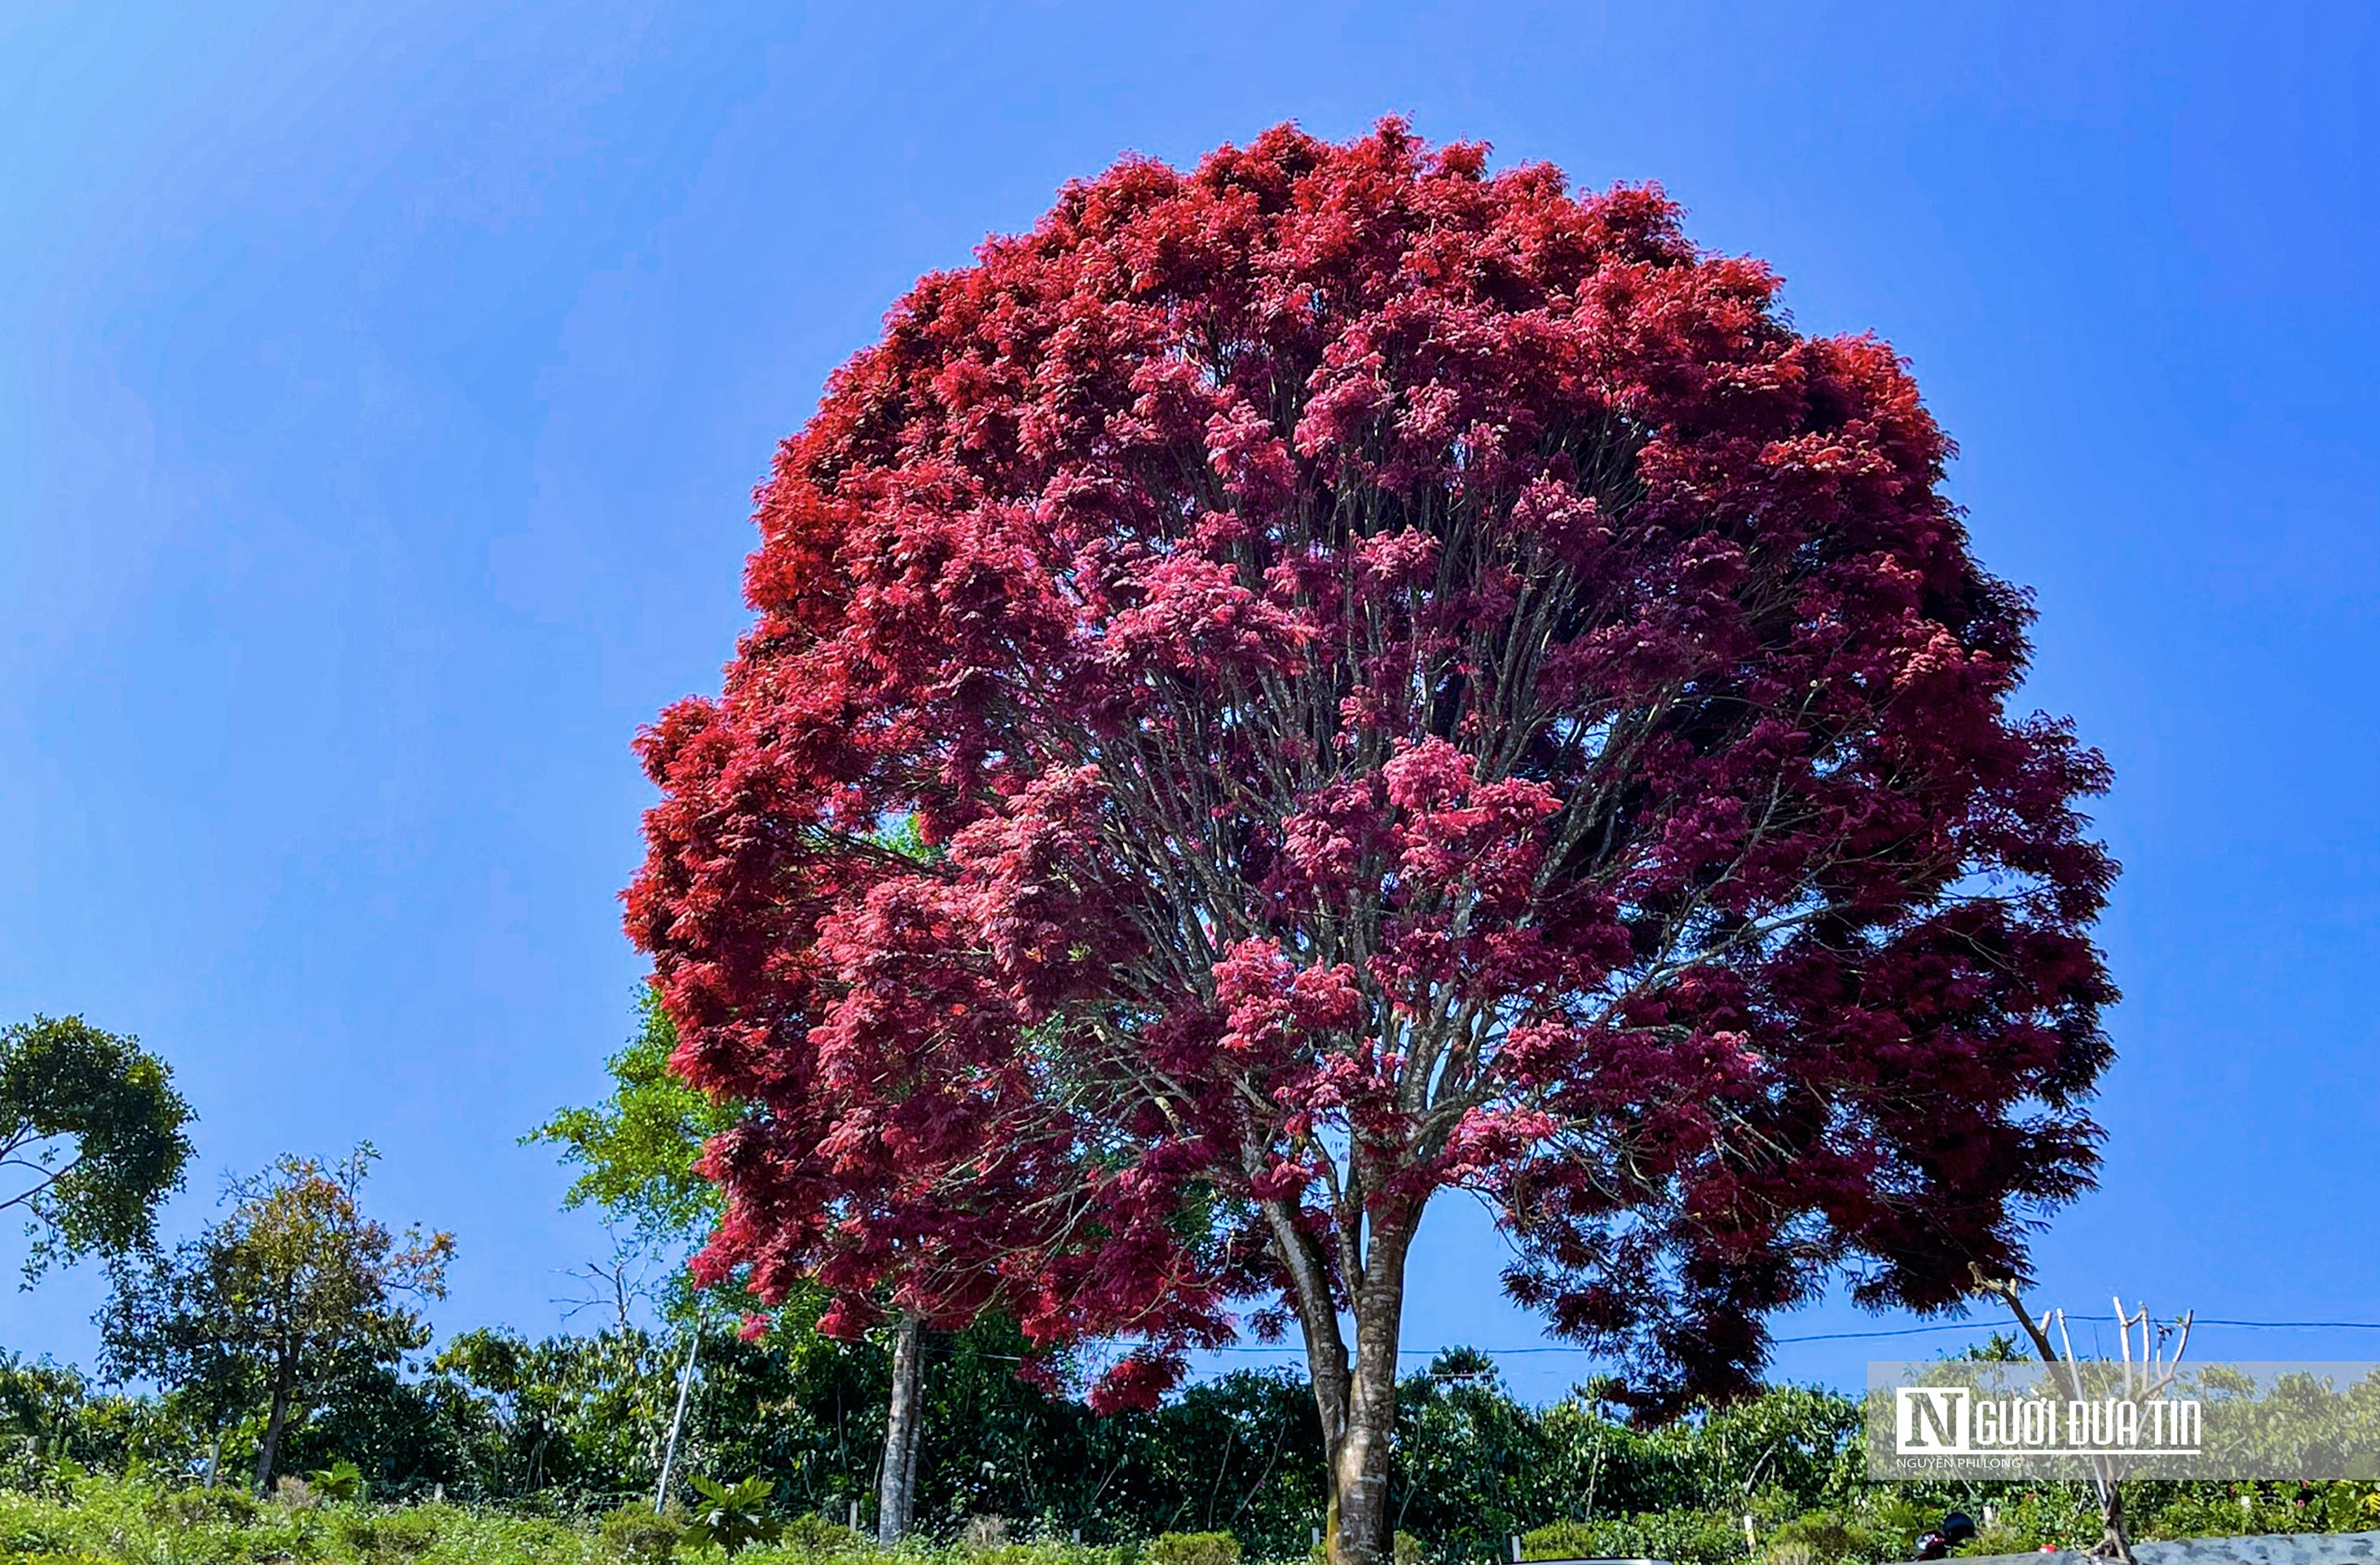 Theo người dân địa phương, cây trâm lá đỏ được mọc riêng lẻ trên đồi cao, cuối tháng 12 âm lịch hằng năm cây đổ lá, thay vào đó một màu lá đỏ huyết, màu sắc của lá tồn tại 3-4 tháng thì đổi màu.